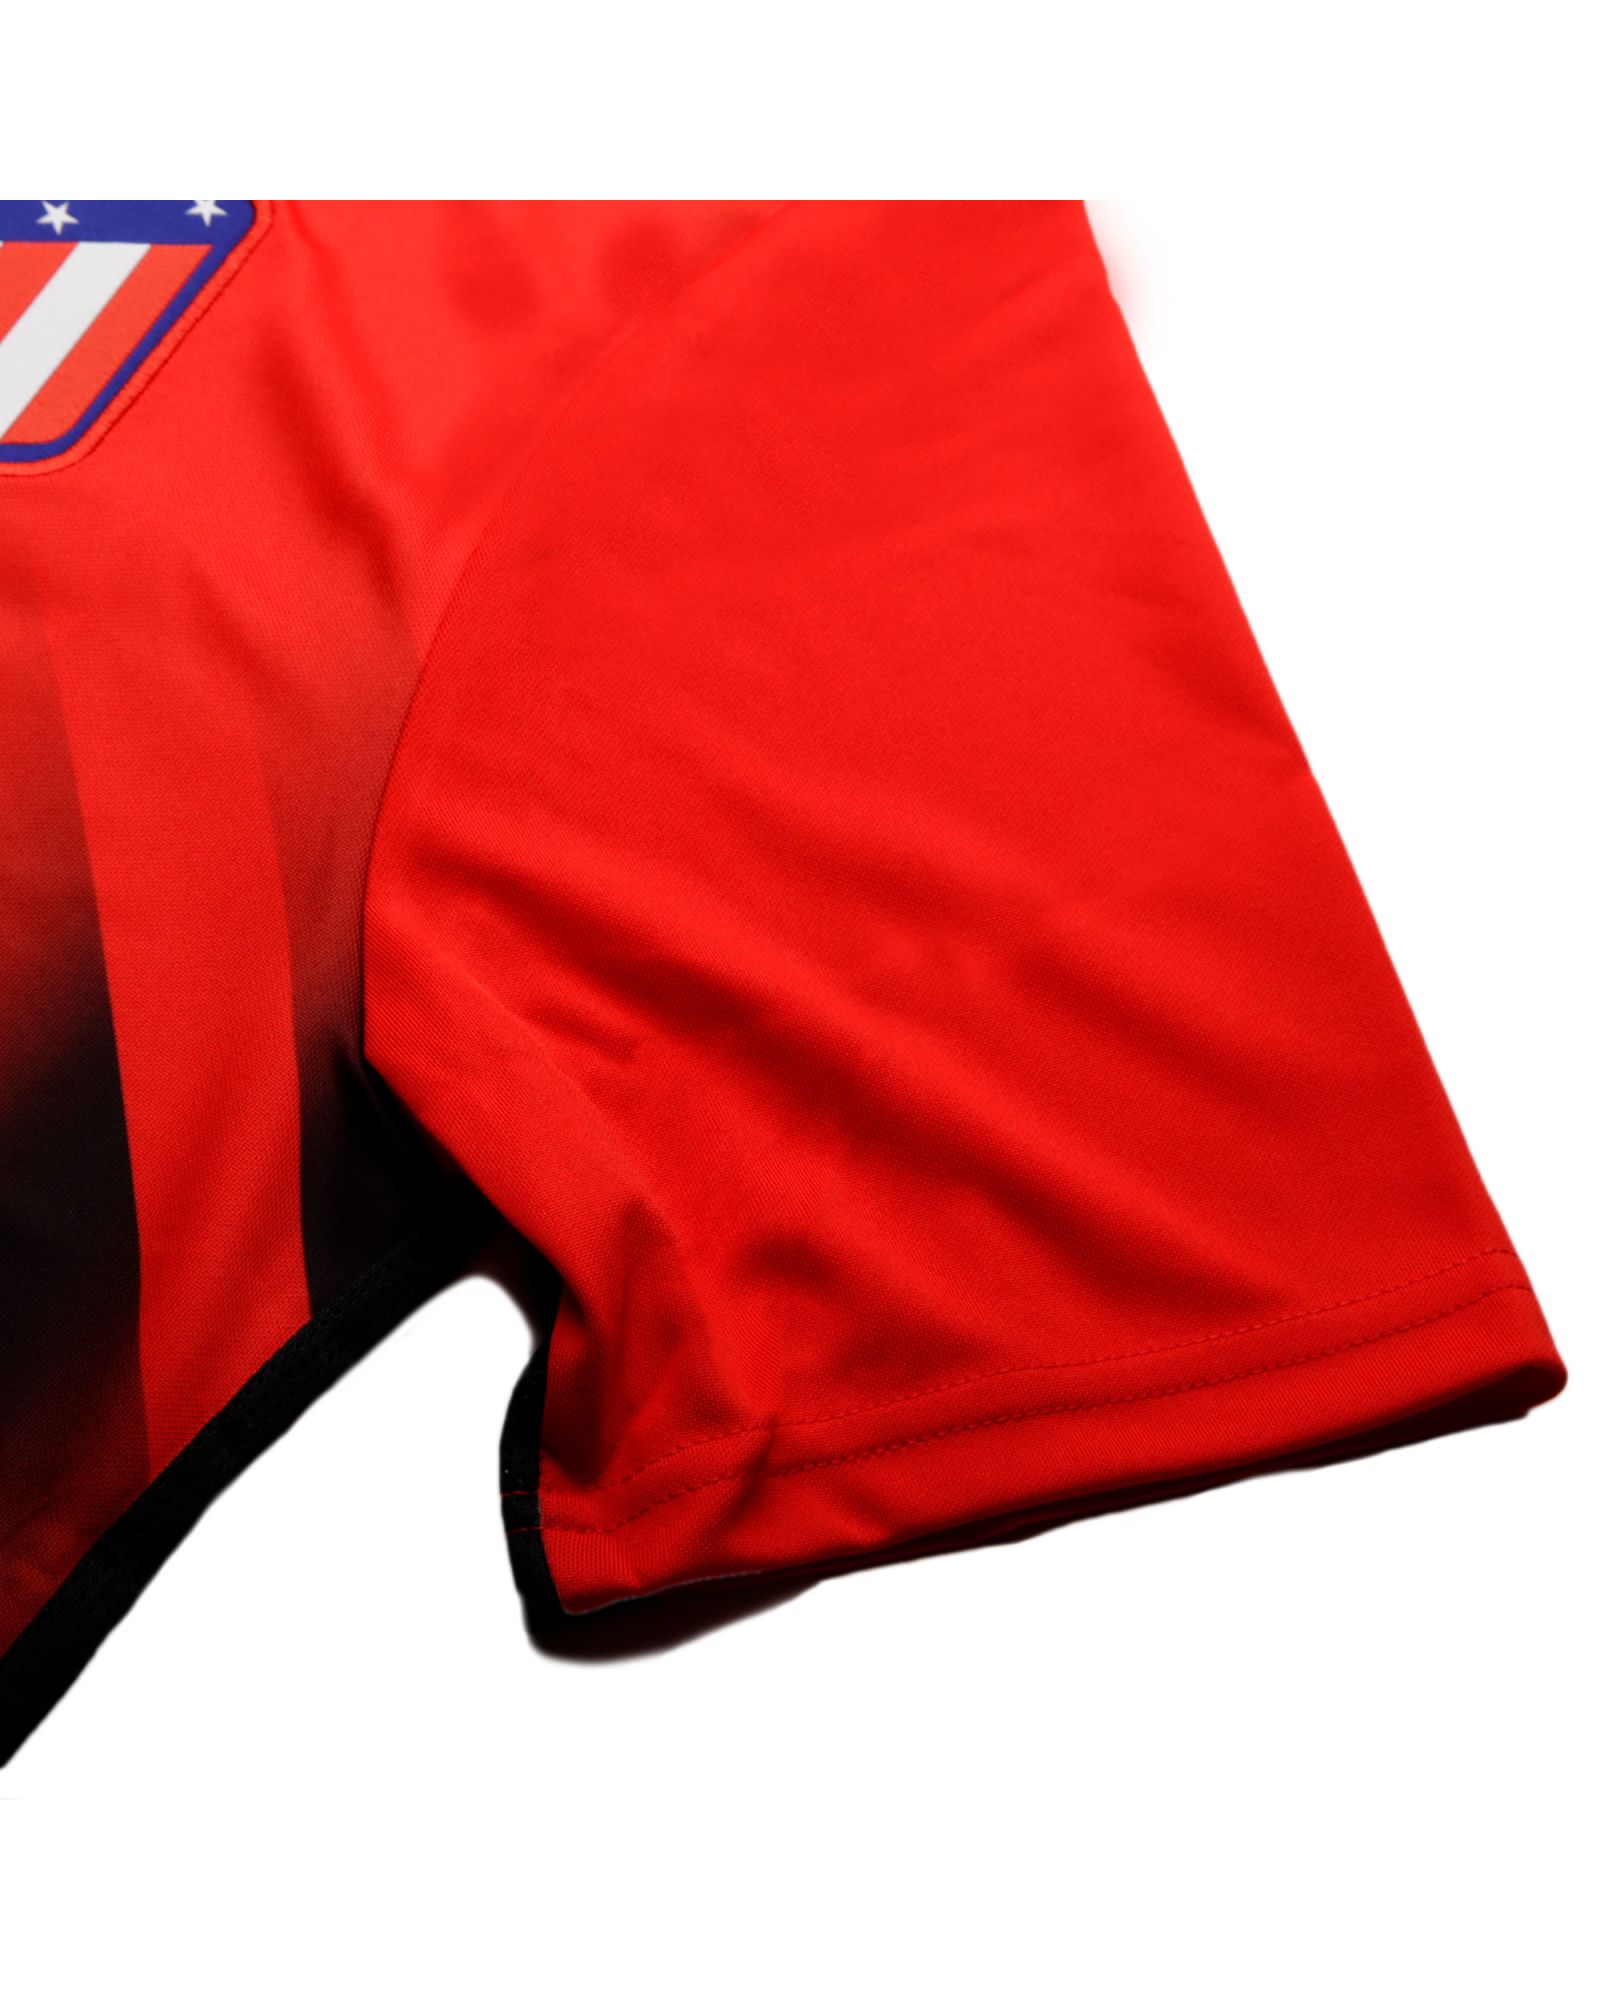 Camiseta Training Atlético de Madrid 2019/2020 Dri-FIT Rojo - Fútbol Factory